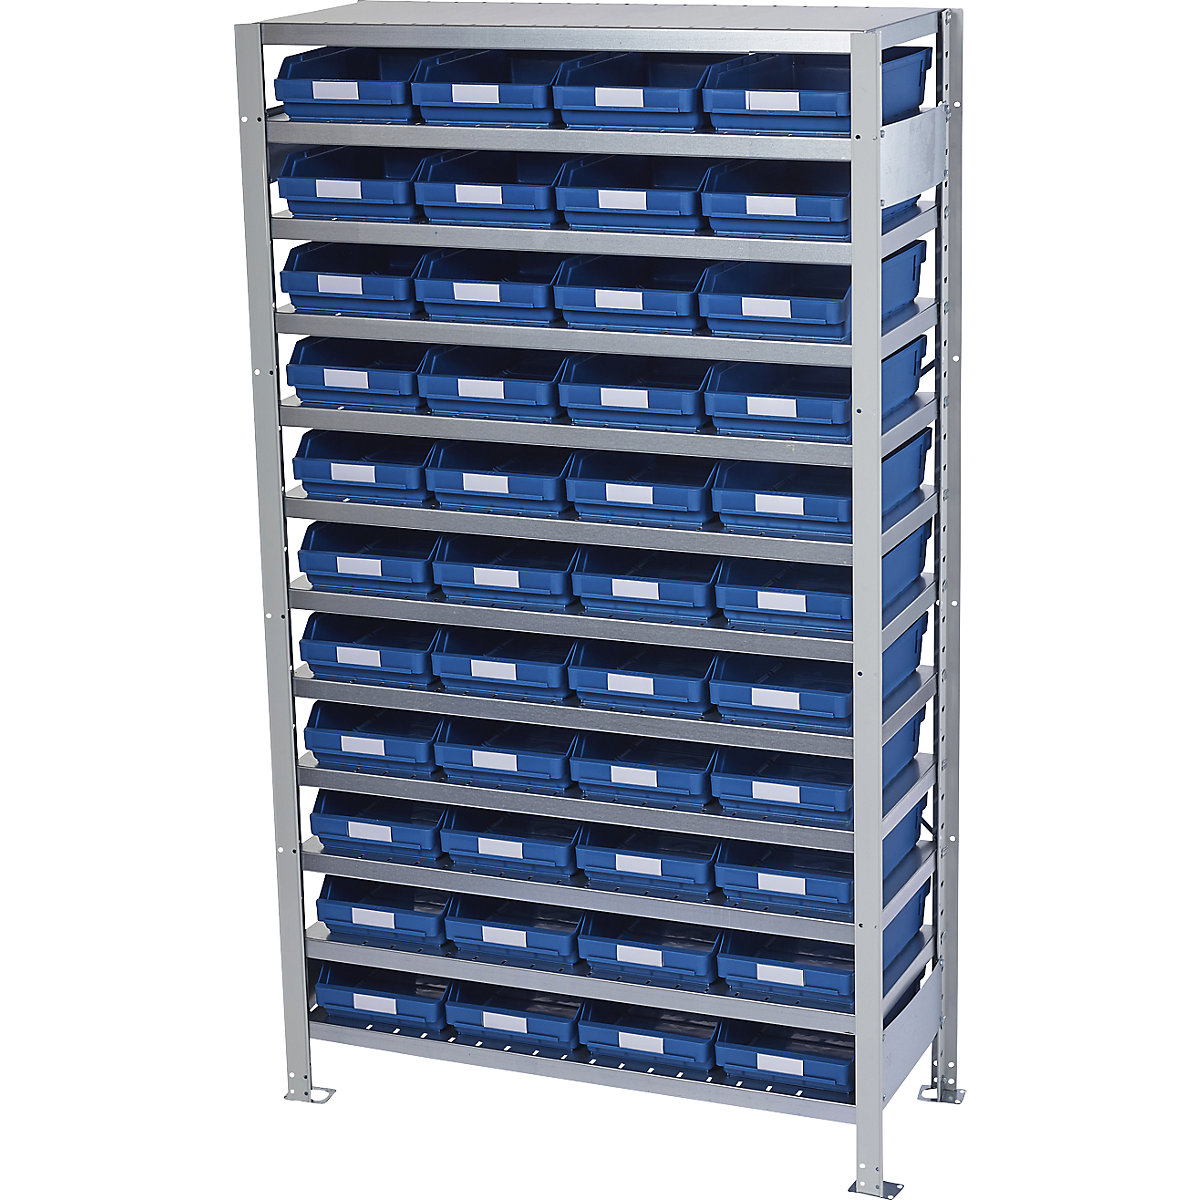 Összedugaszolós állvány dobozokkal – STEMO, állványmagasság 1790 mm, alapállvány, 500 mm mély, 44 kék doboz-16